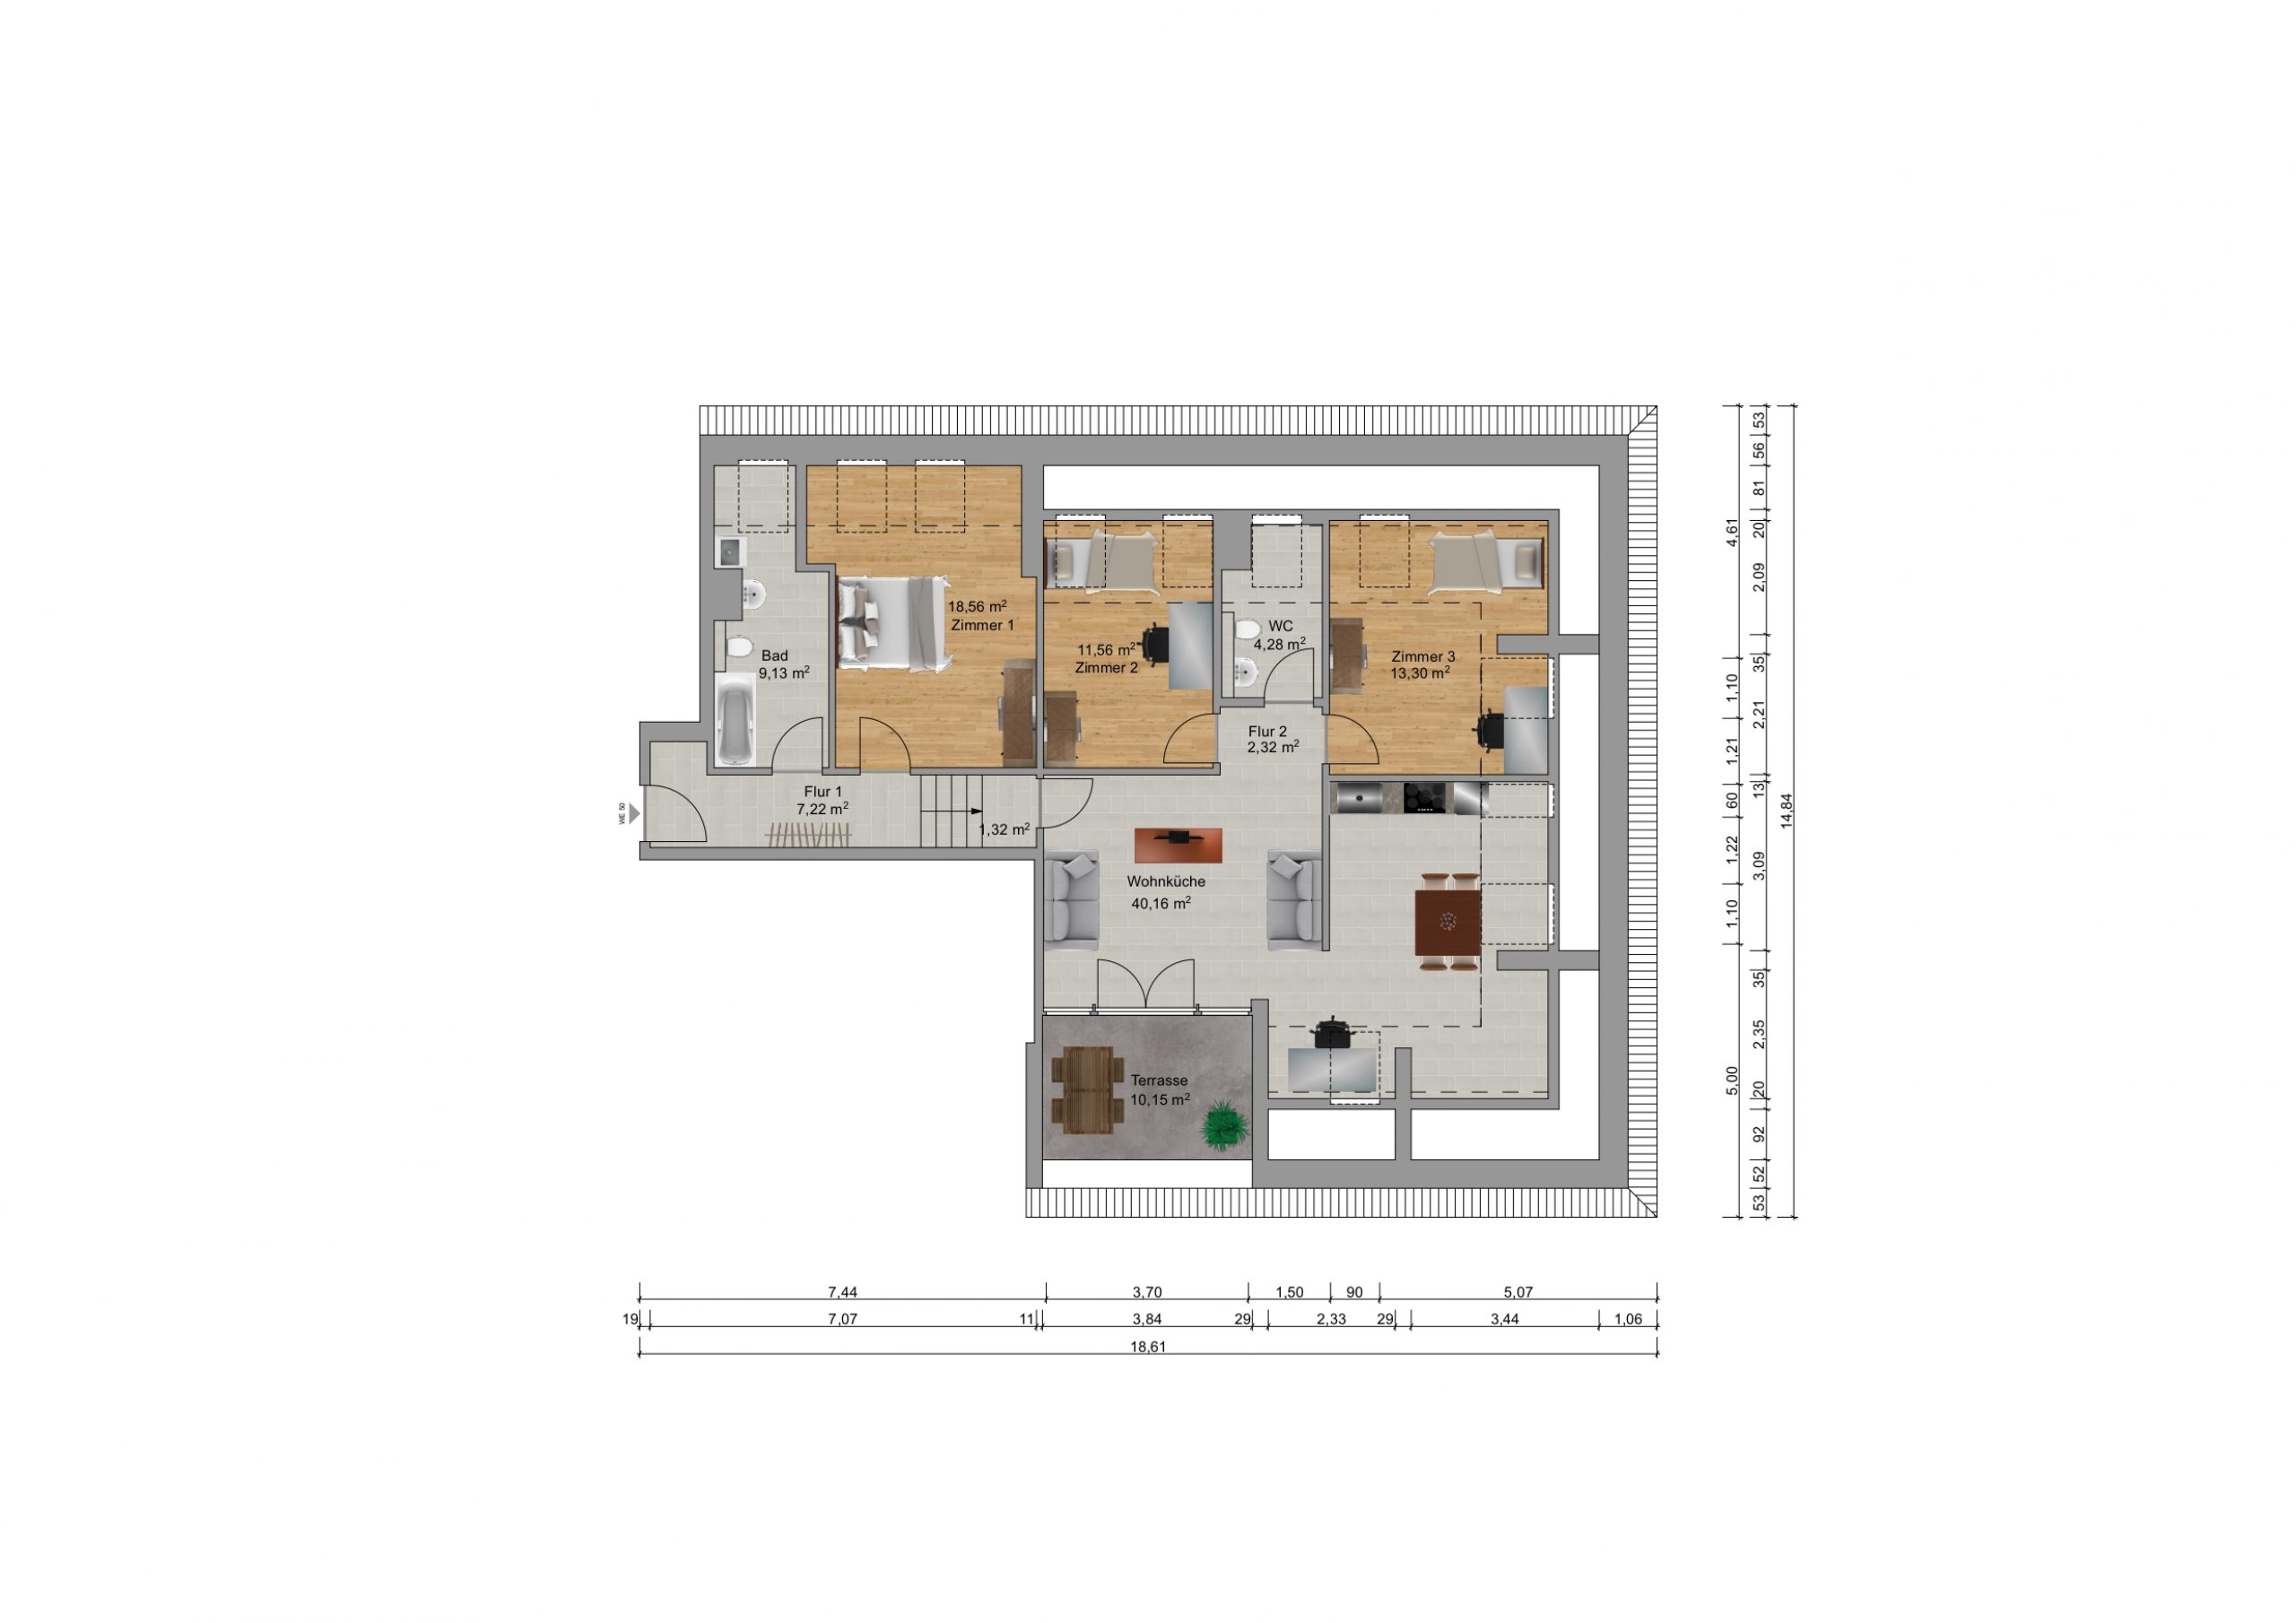 furnished-floor-plan-berlin-1